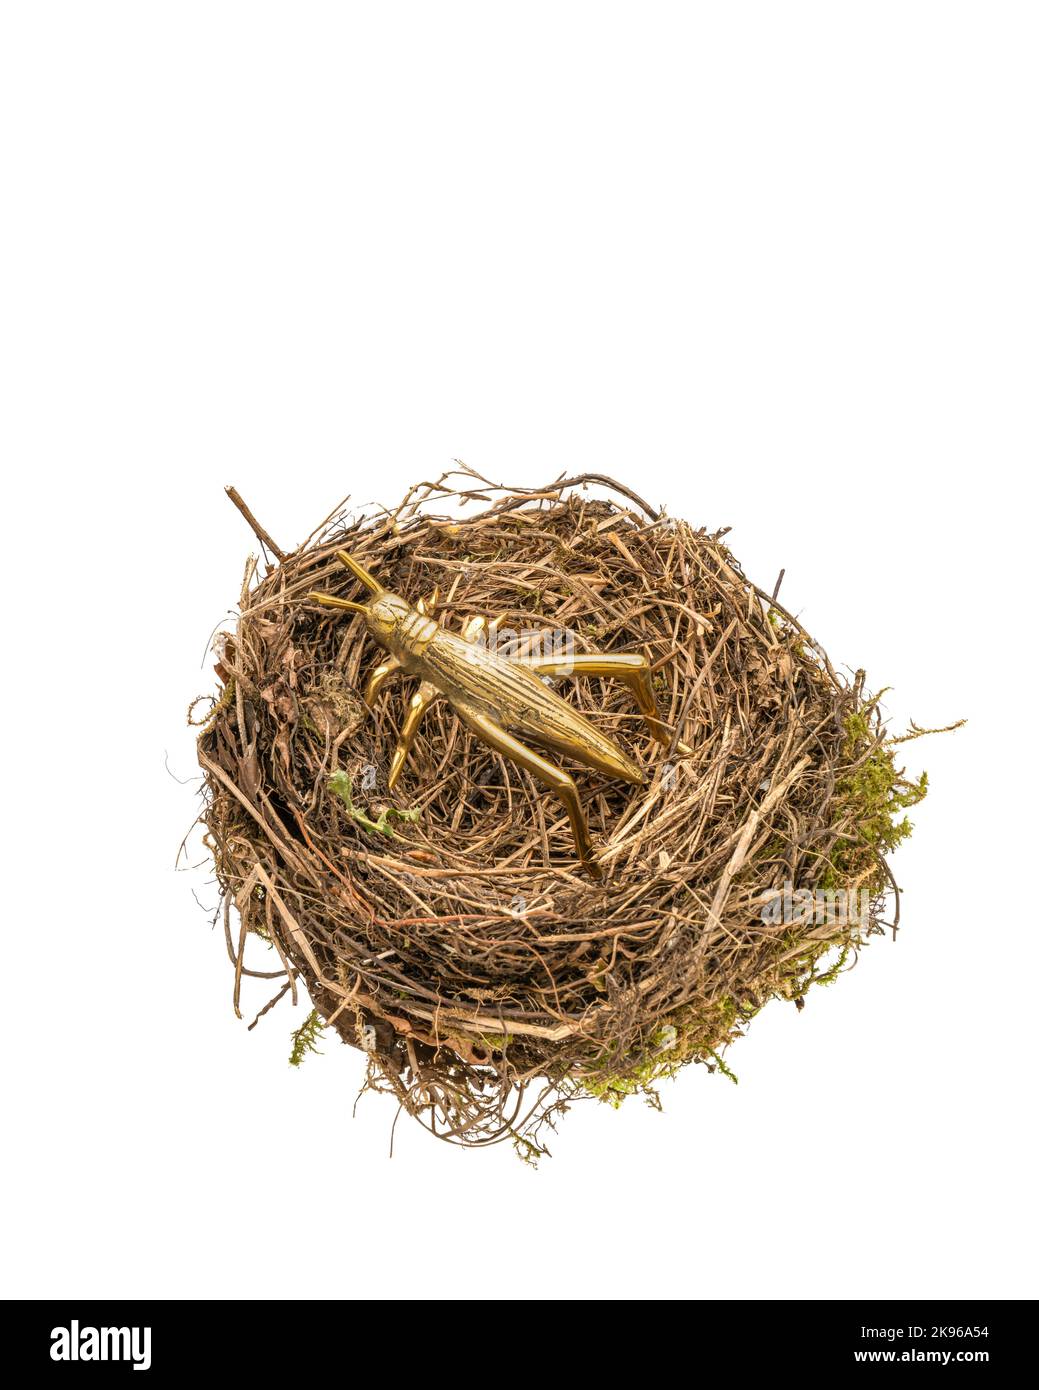 Birds nest with nesting grasshopper Stock Photo